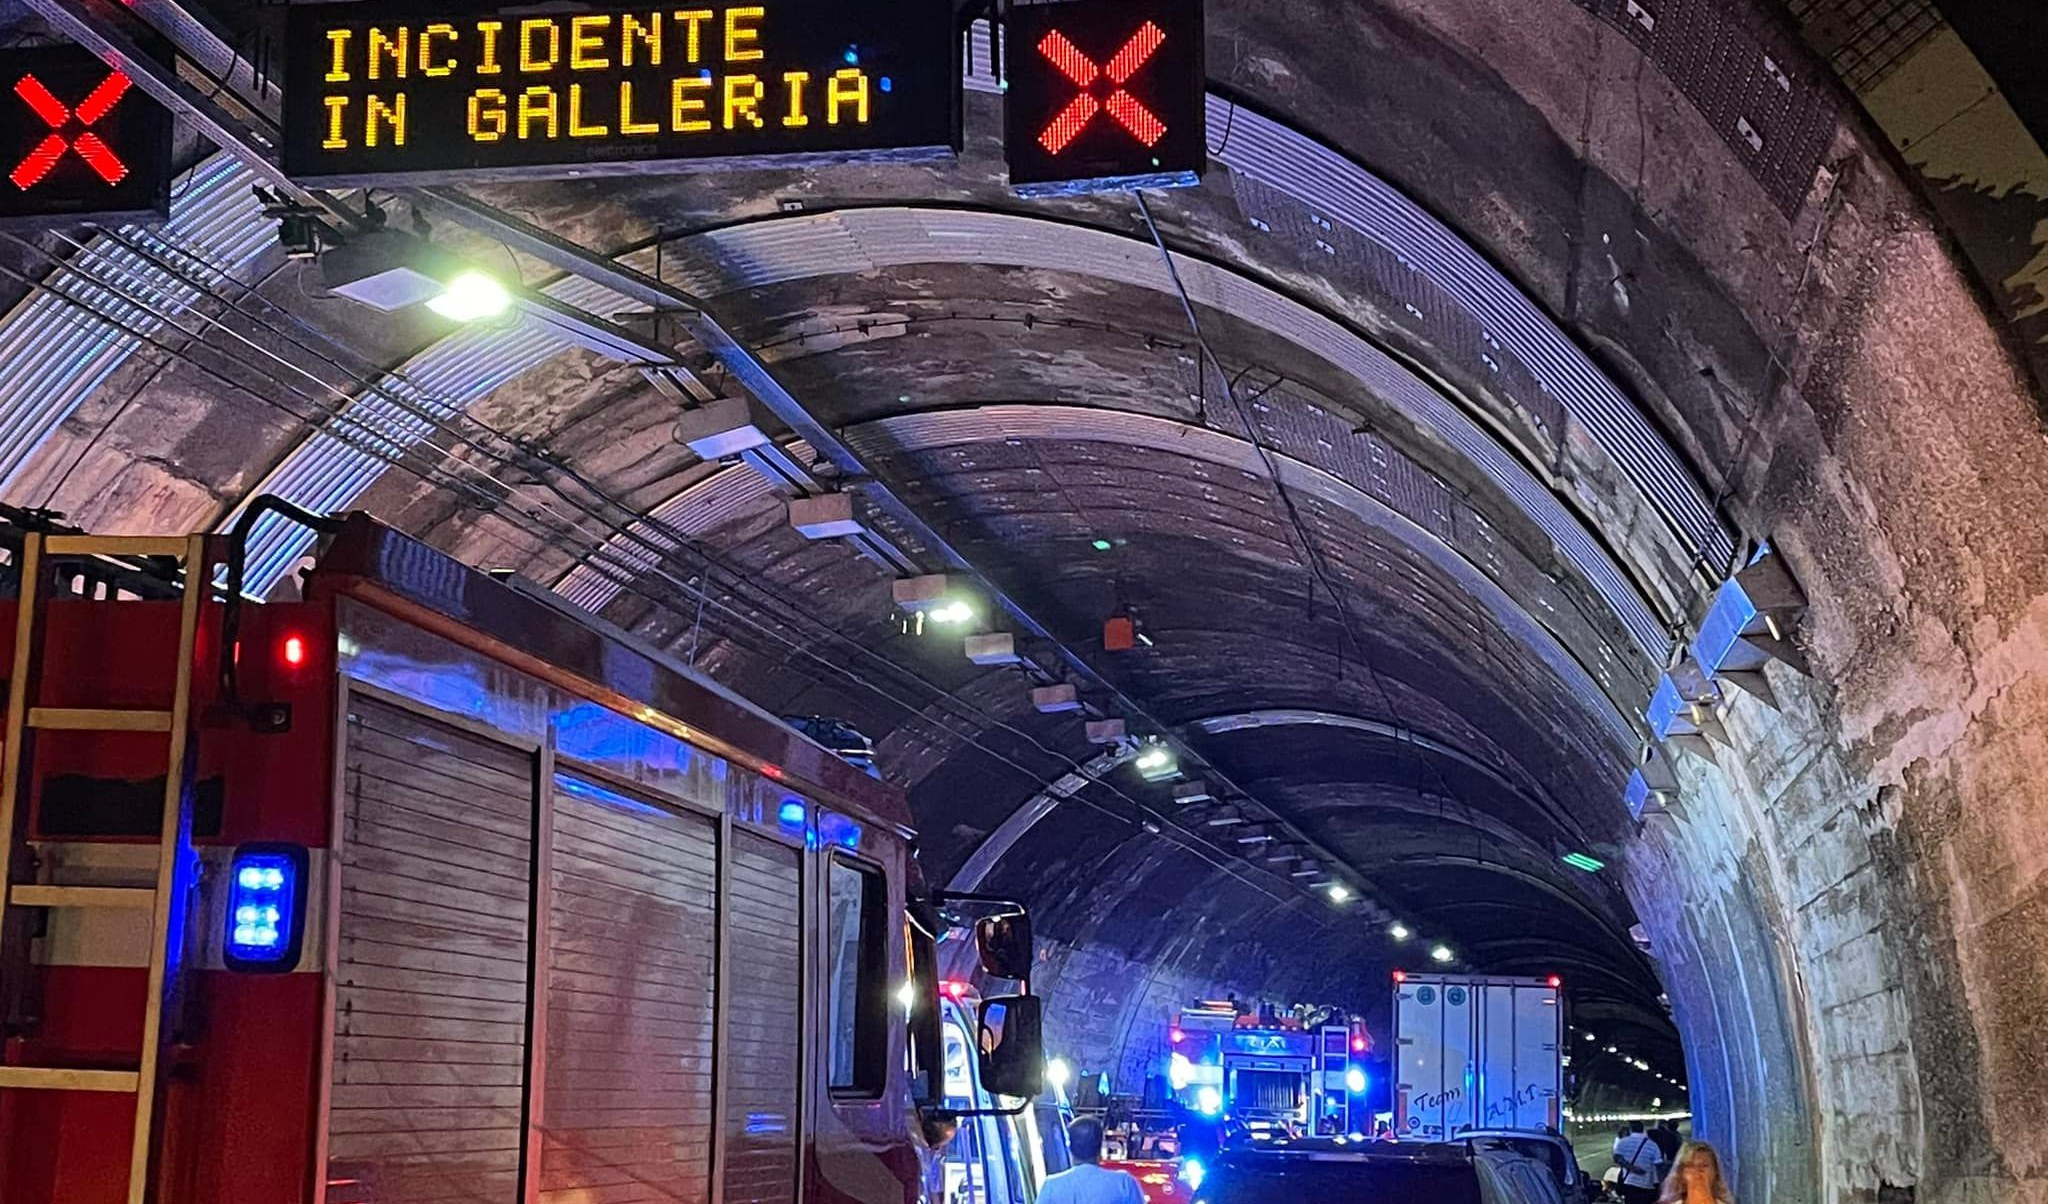 Caos autostrade, auto si ribalta in galleria prima di Genova Est